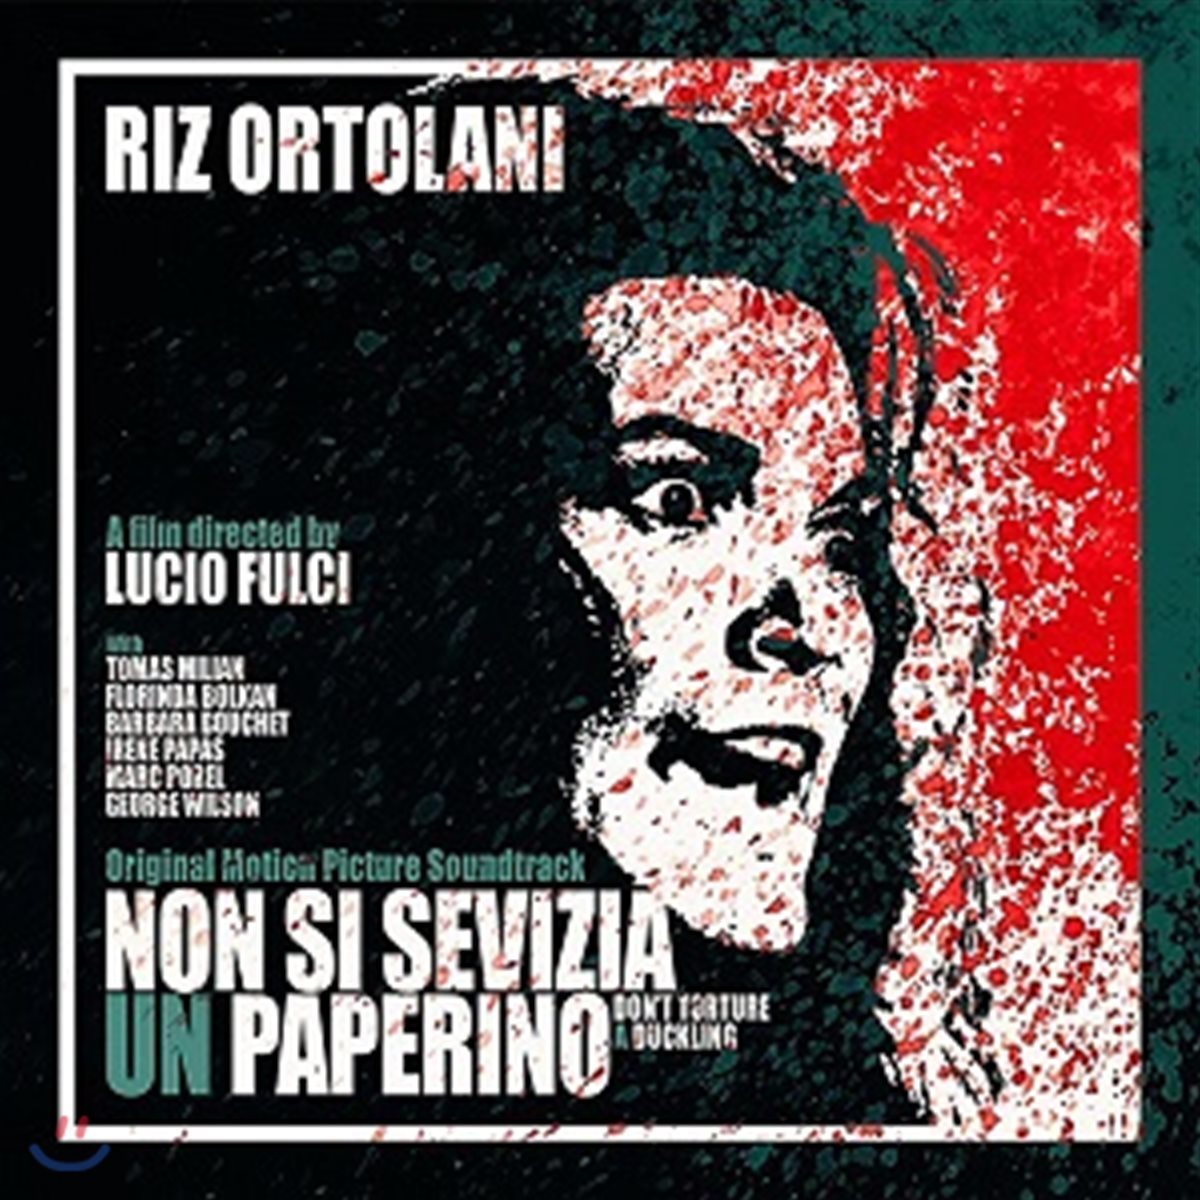 악마의 딸 영화음악 (Non Si Sevizia Un Paperino OST by Riz Ortolani 리즈 오르톨라니) [클리어 라임 컬러 LP]